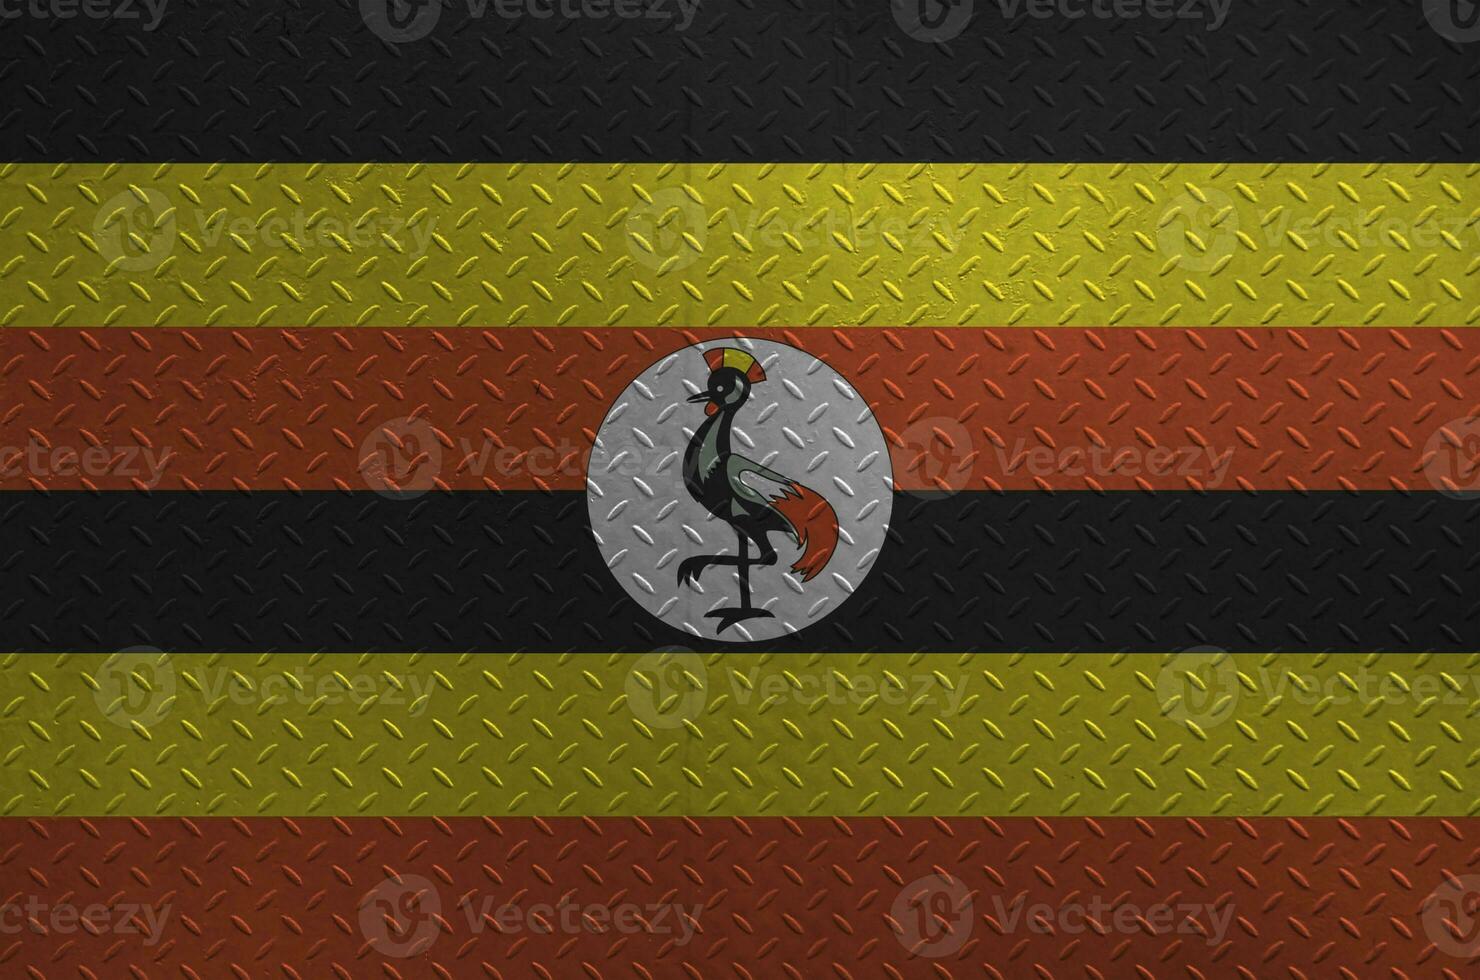 uganda flagga avbildad i måla färger på gammal borstat metall tallrik eller vägg närbild. texturerad baner på grov bakgrund foto